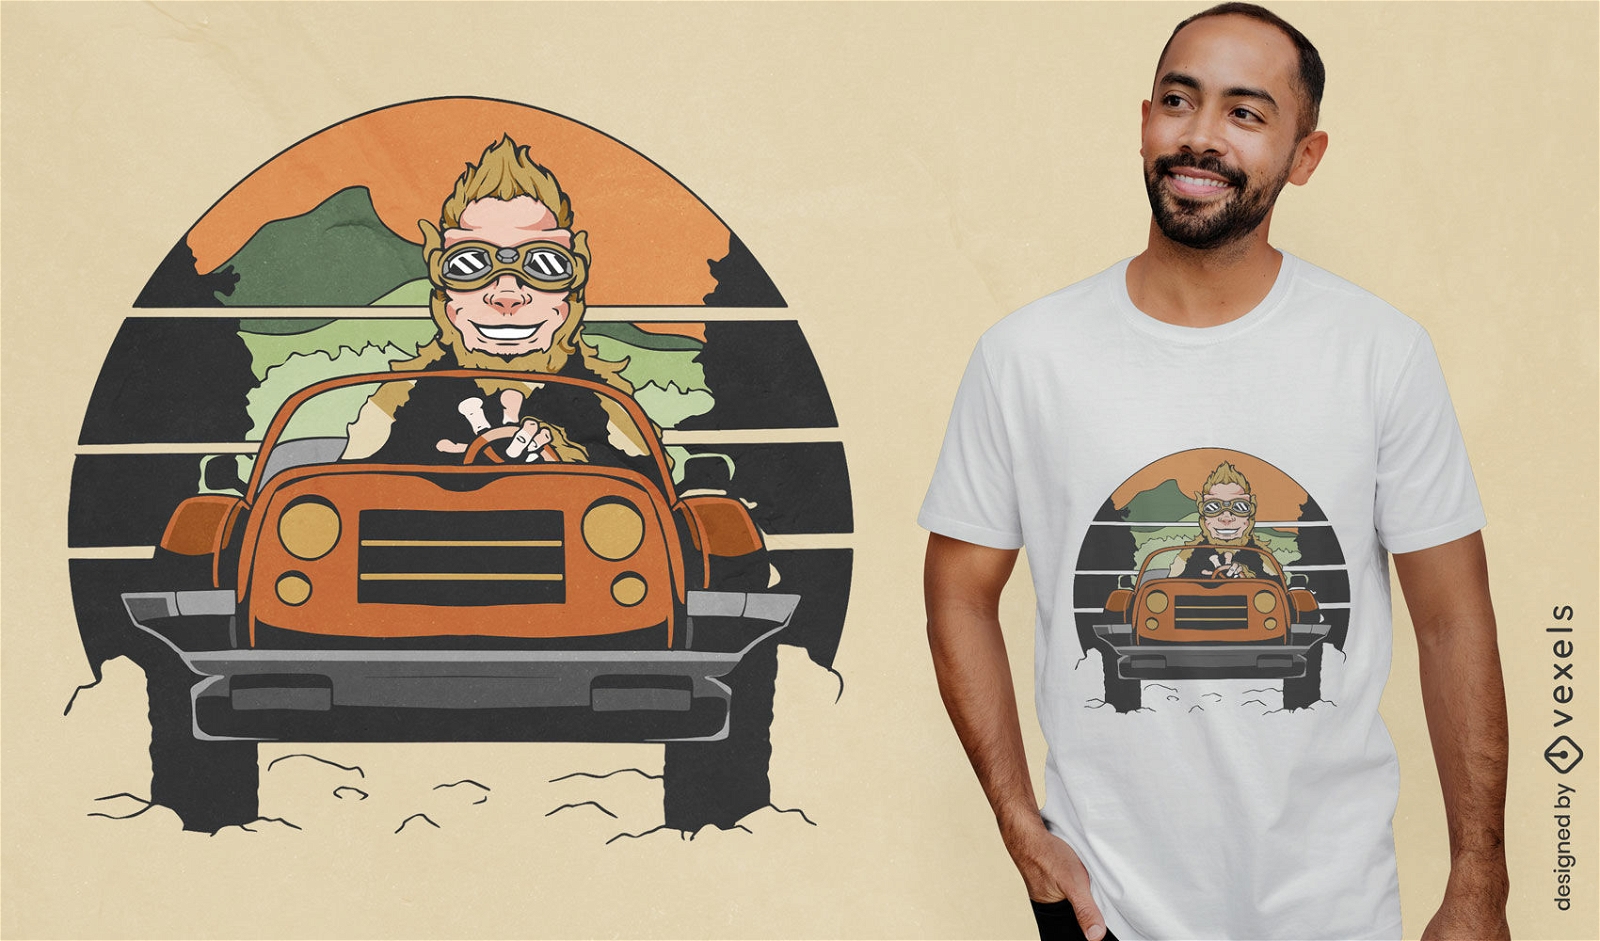 Big foot driving car t-shirt design